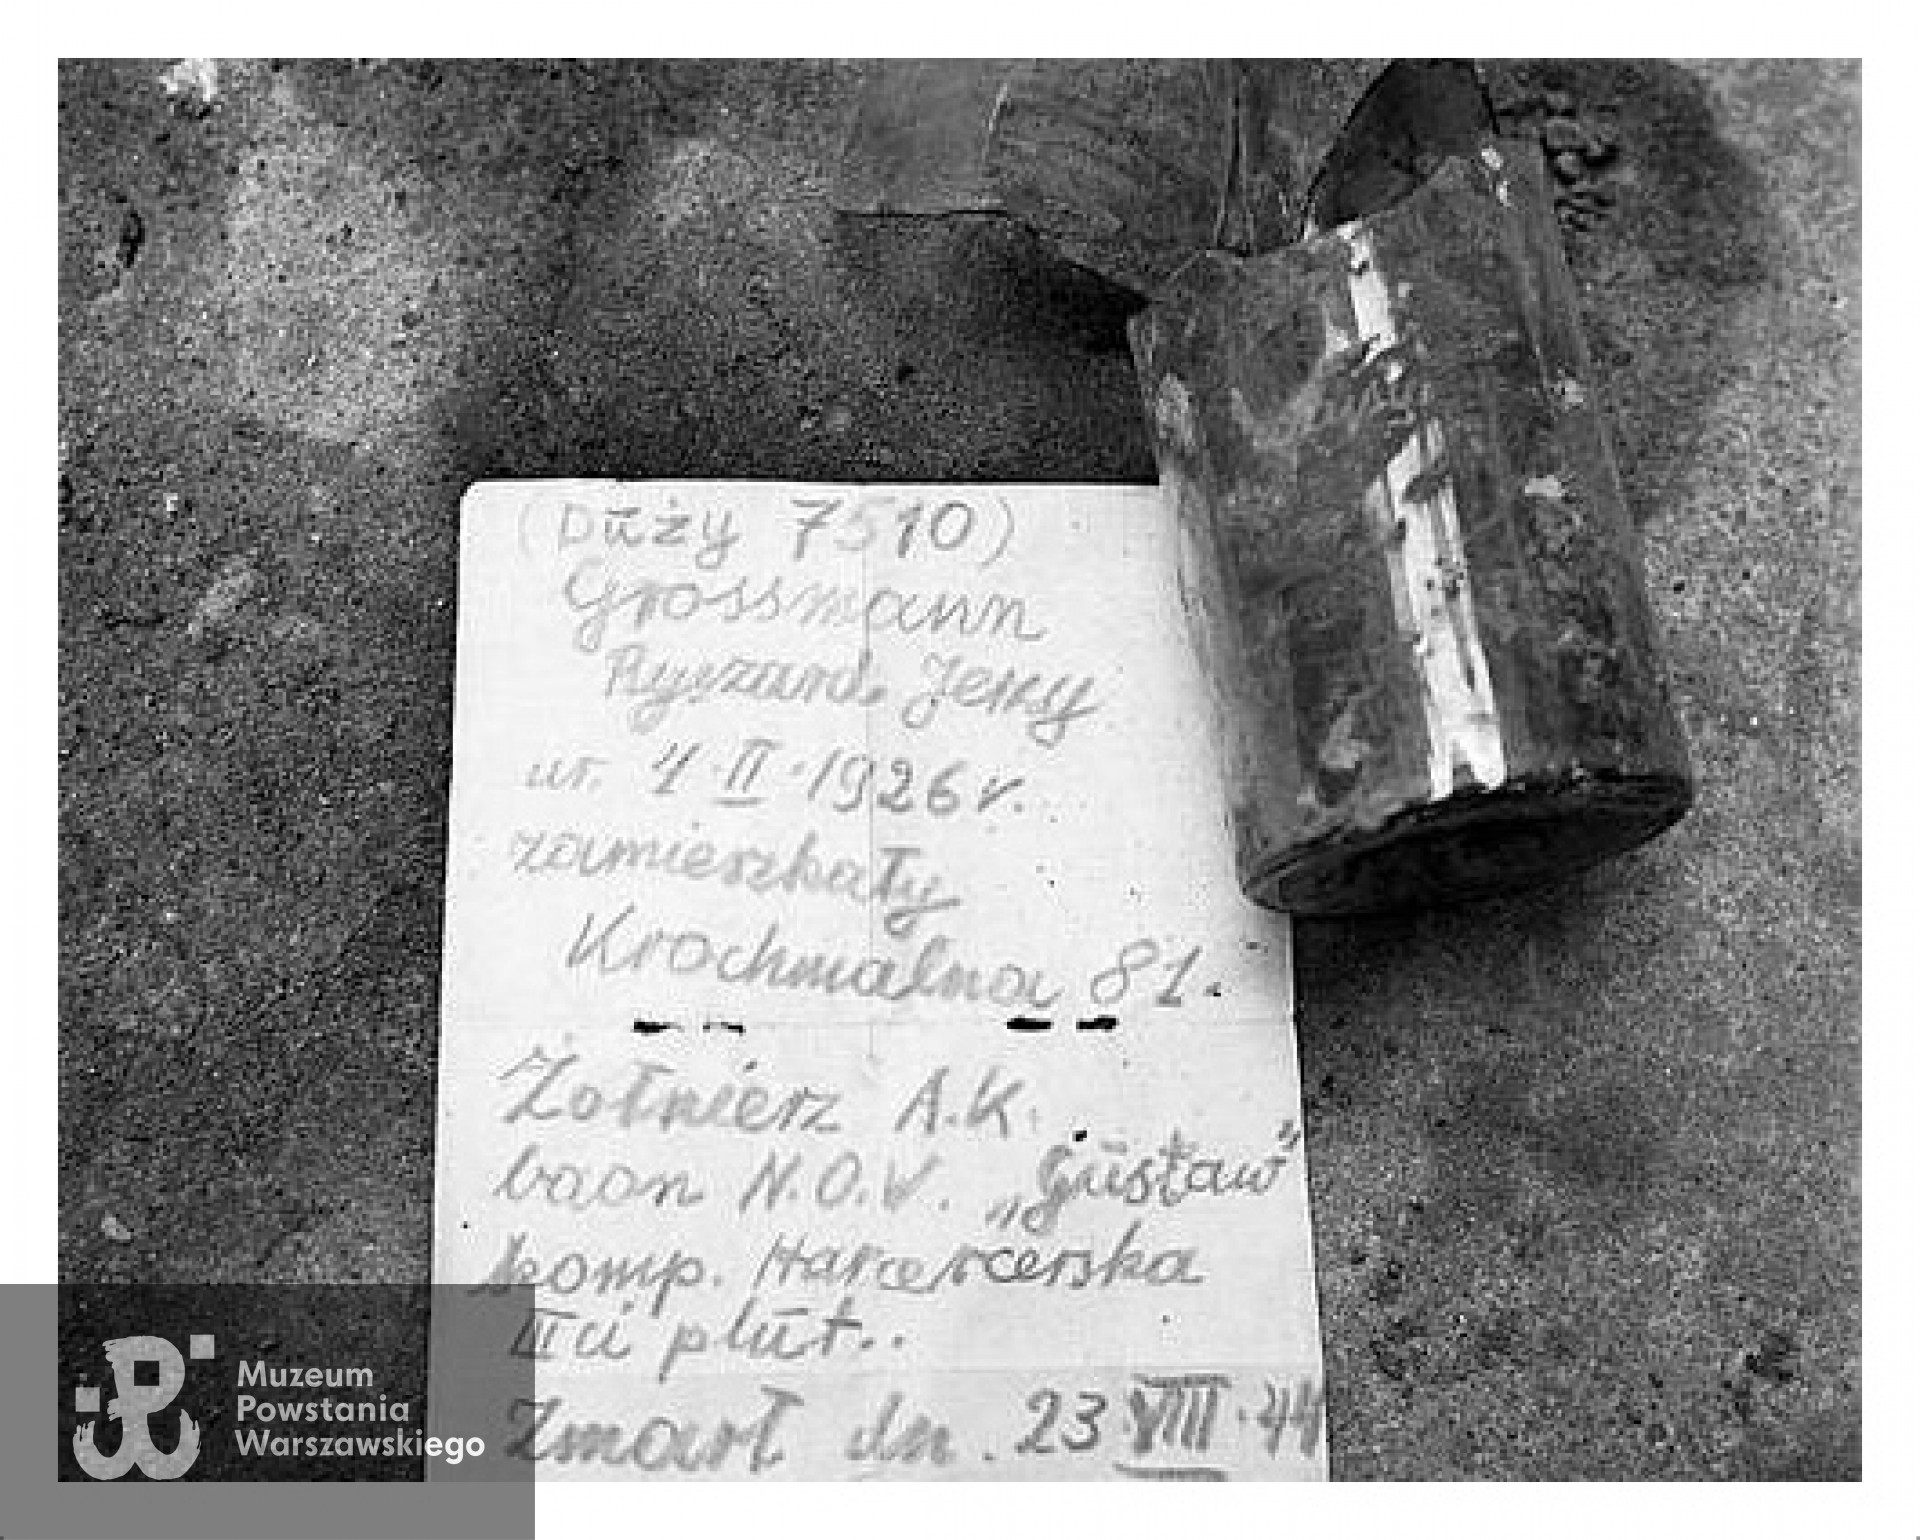 Karta z danymi osobowymi znaleziona w butelce podczas ekshumacji zwłok powstańca - Ryszarda Grossmana ps.  Duży  z kompanii harcerskiej batalionu  Gustaw , zmarłego 23.08.1944 r. Fot. Jarosław Tarań